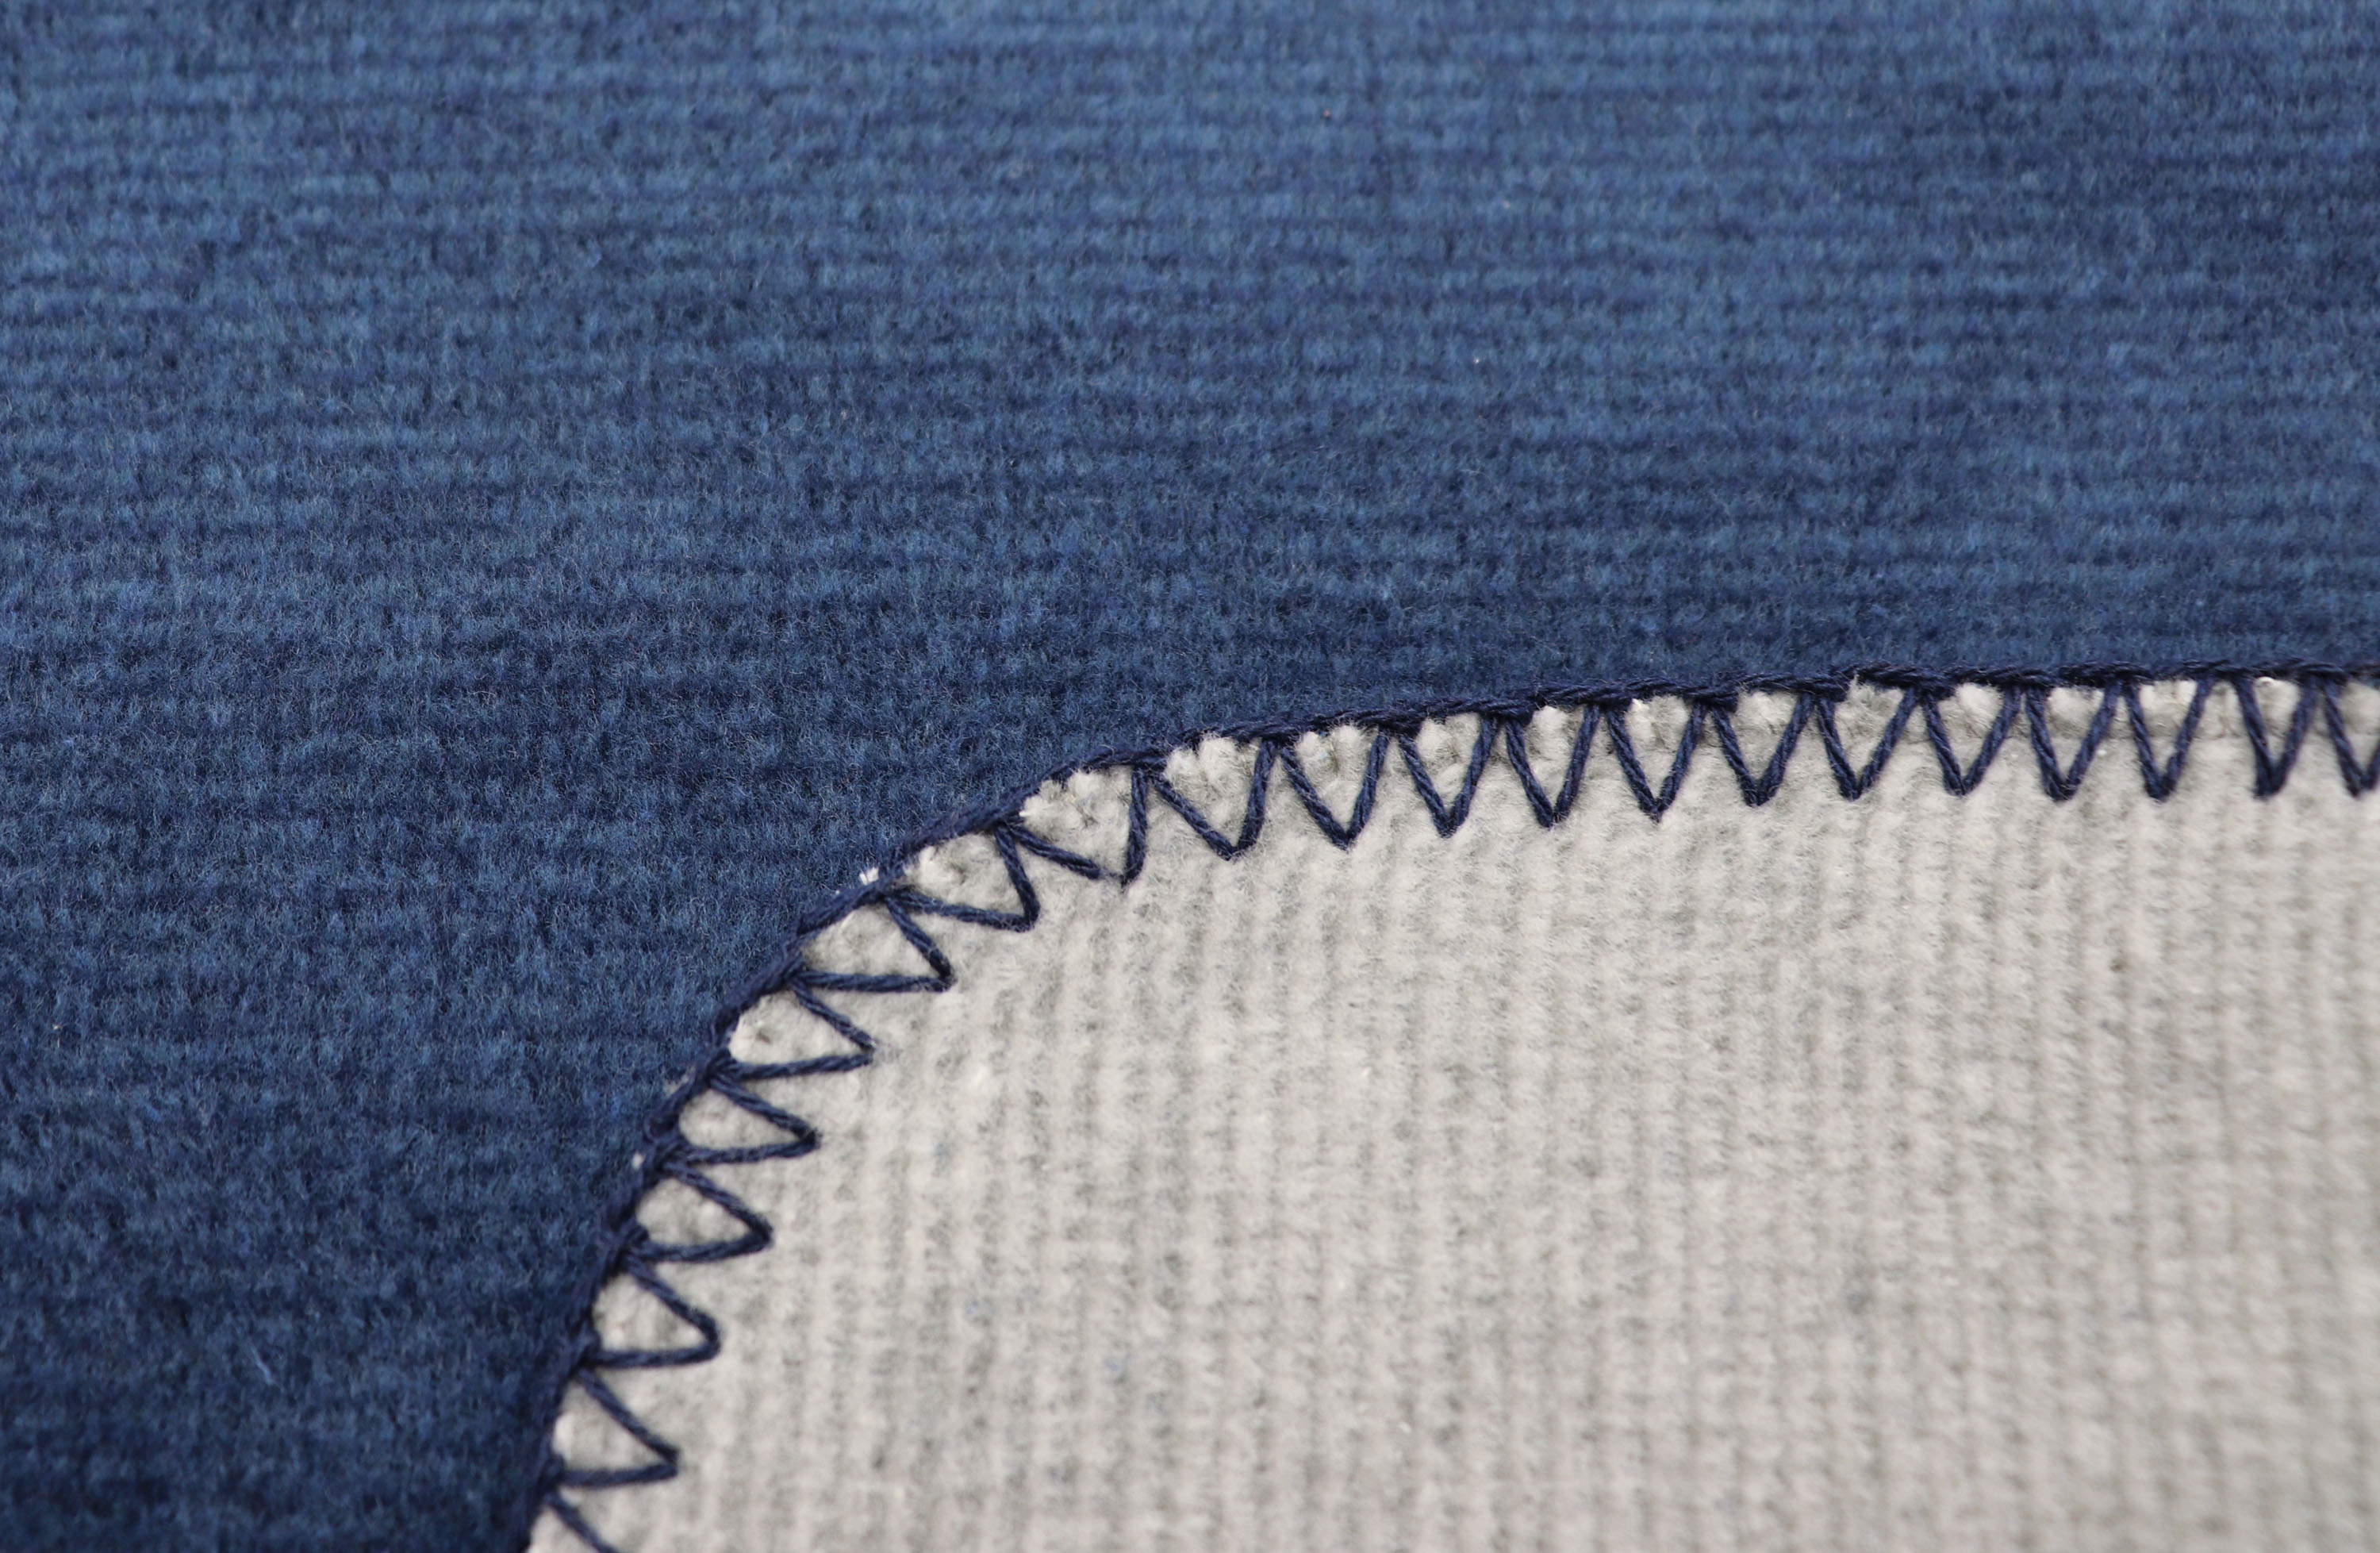 Wohndecke "Melange Doubleface" aus Baumwollmischgewebe in 150x200 cm in Marineblau-Silbergrau - Zierstich